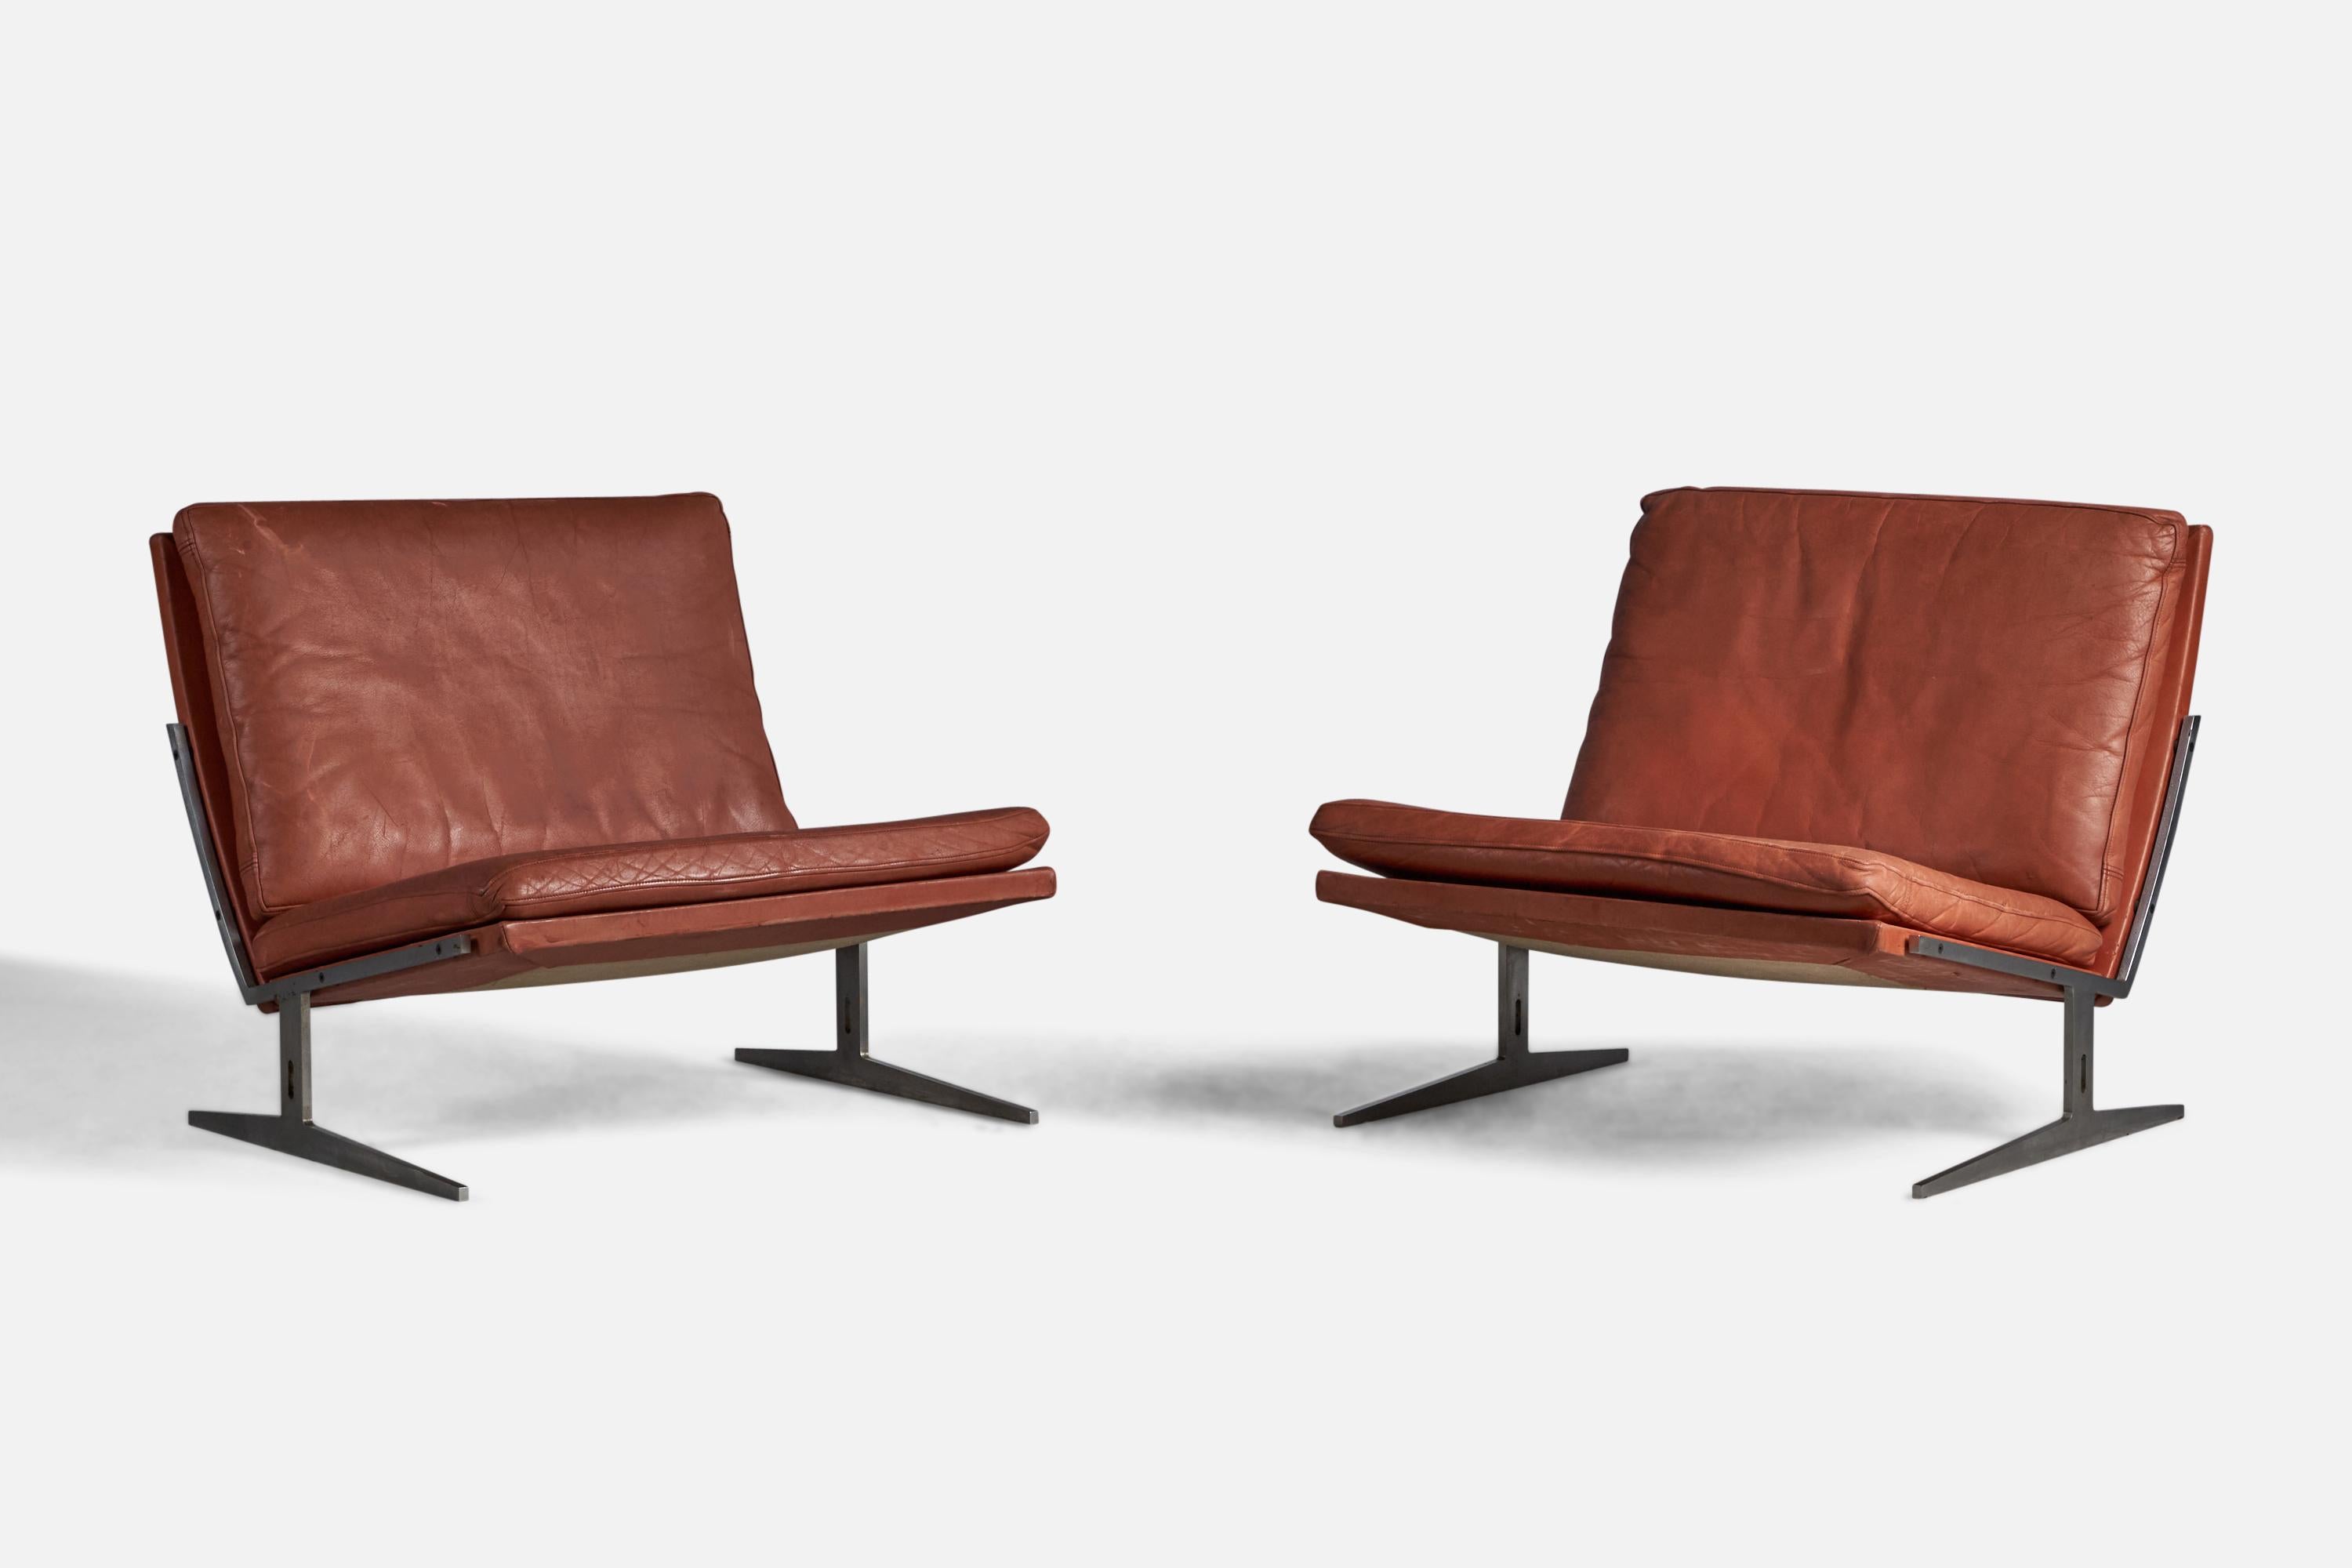 Paire de chaises de salon ou de pantoufles en acier et en cuir rouge conçues par Preben Fabricius & Jørgen Kastholm et produites par Bo-Ex, Danemark, 1960.

Hauteur d'assise de 12 pouces